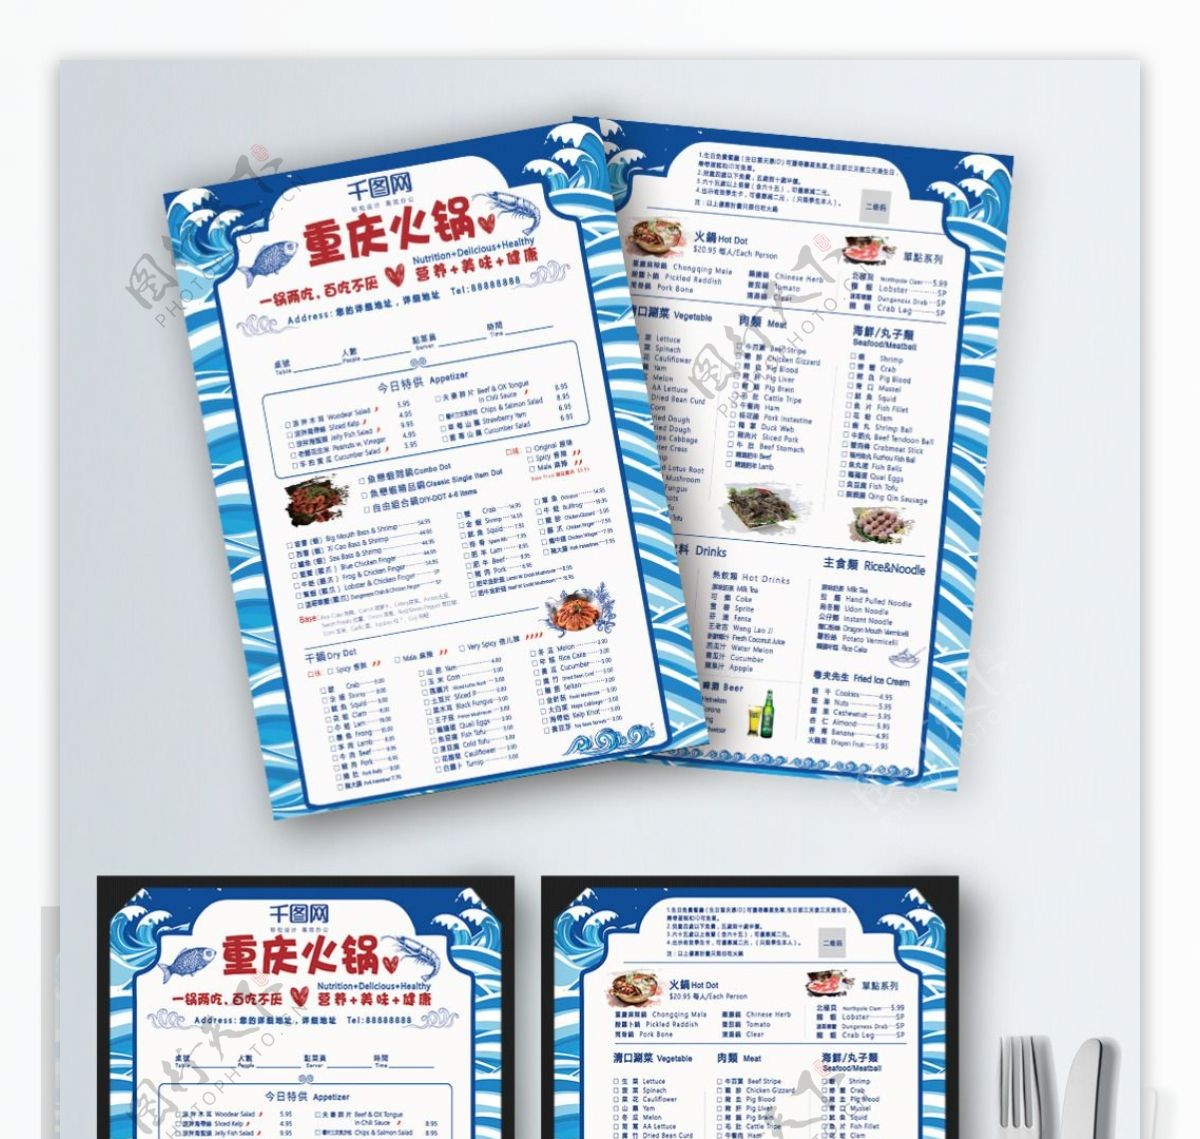 重庆火锅DM宣传单点菜单海鲜菜单干锅大虾